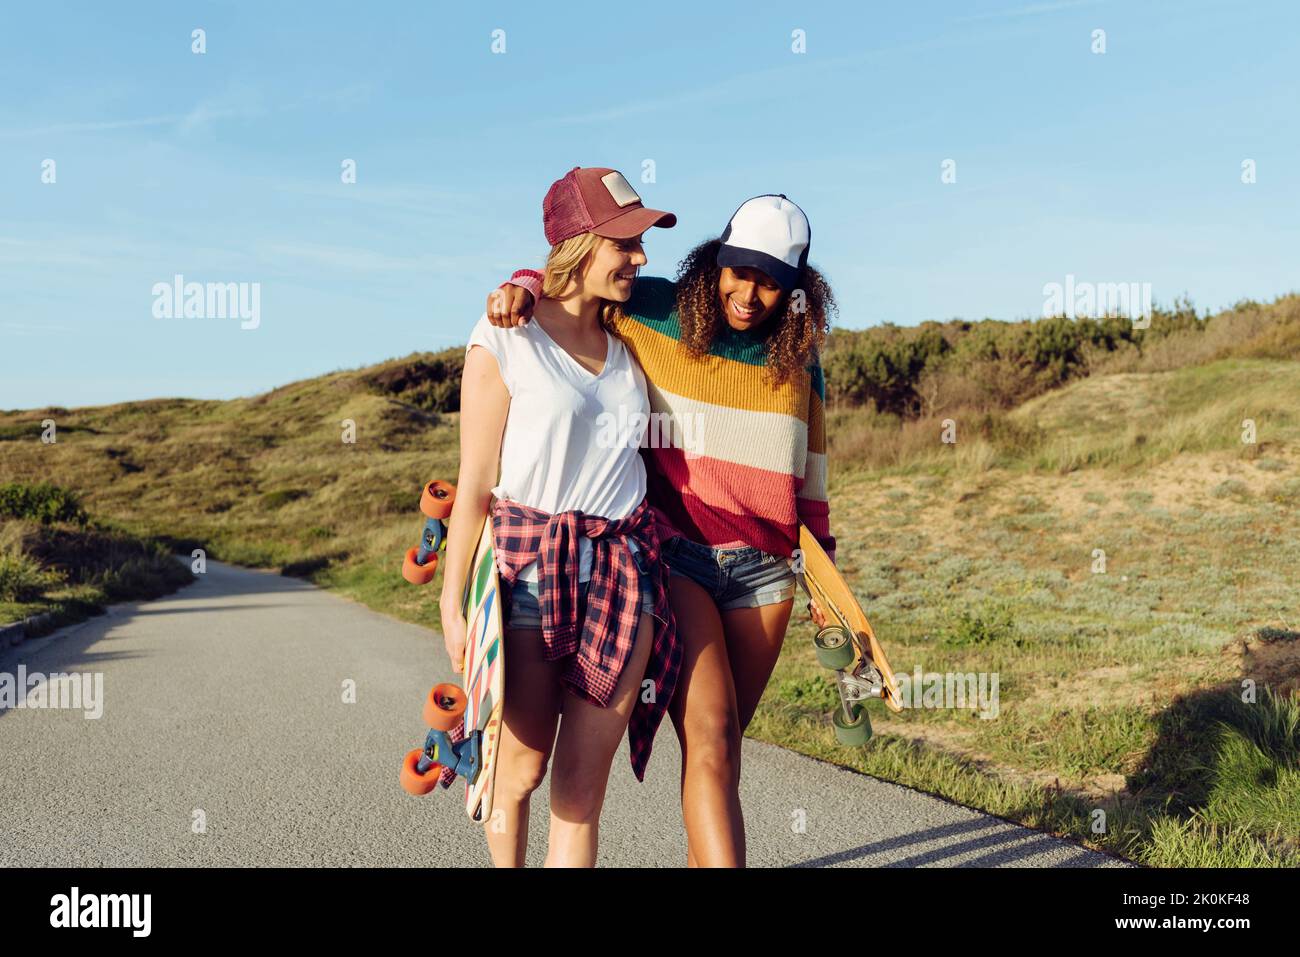 Zwei wunderschöne, multiethnische, fröhliche Frauen, die Skateboards halten, während sie an einem sonnigen Tag mitten auf einer Straße gehen und sich auf das Sho des anderen lehnen Stockfoto